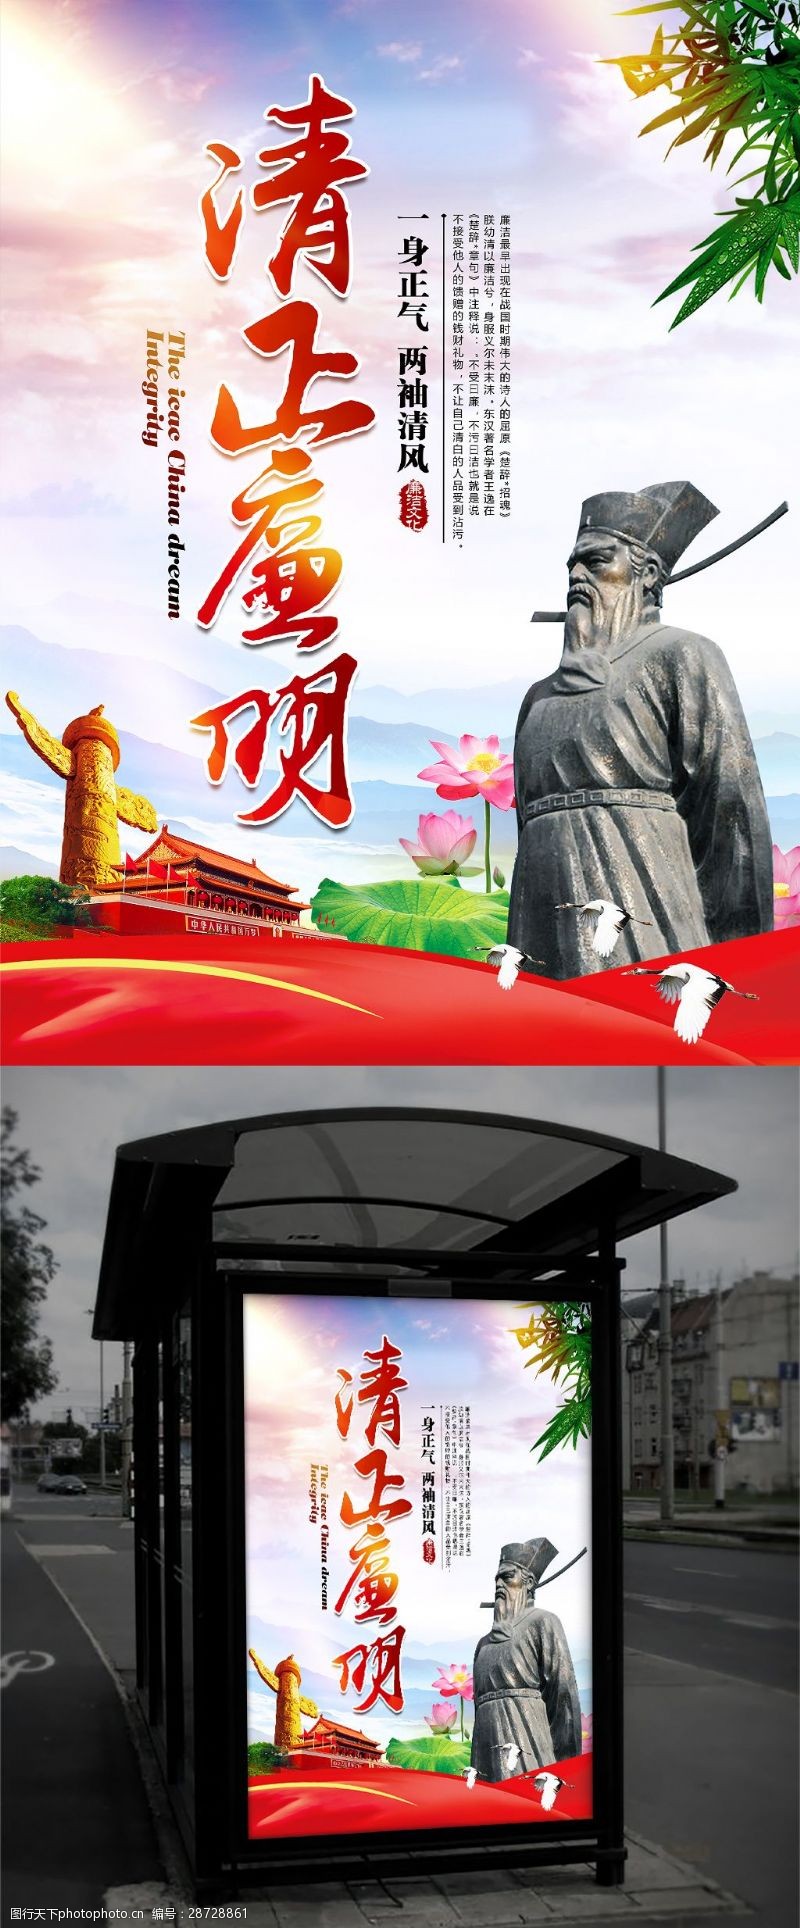 语主美清正廉明唯美中国风廉政文化主题海报设计